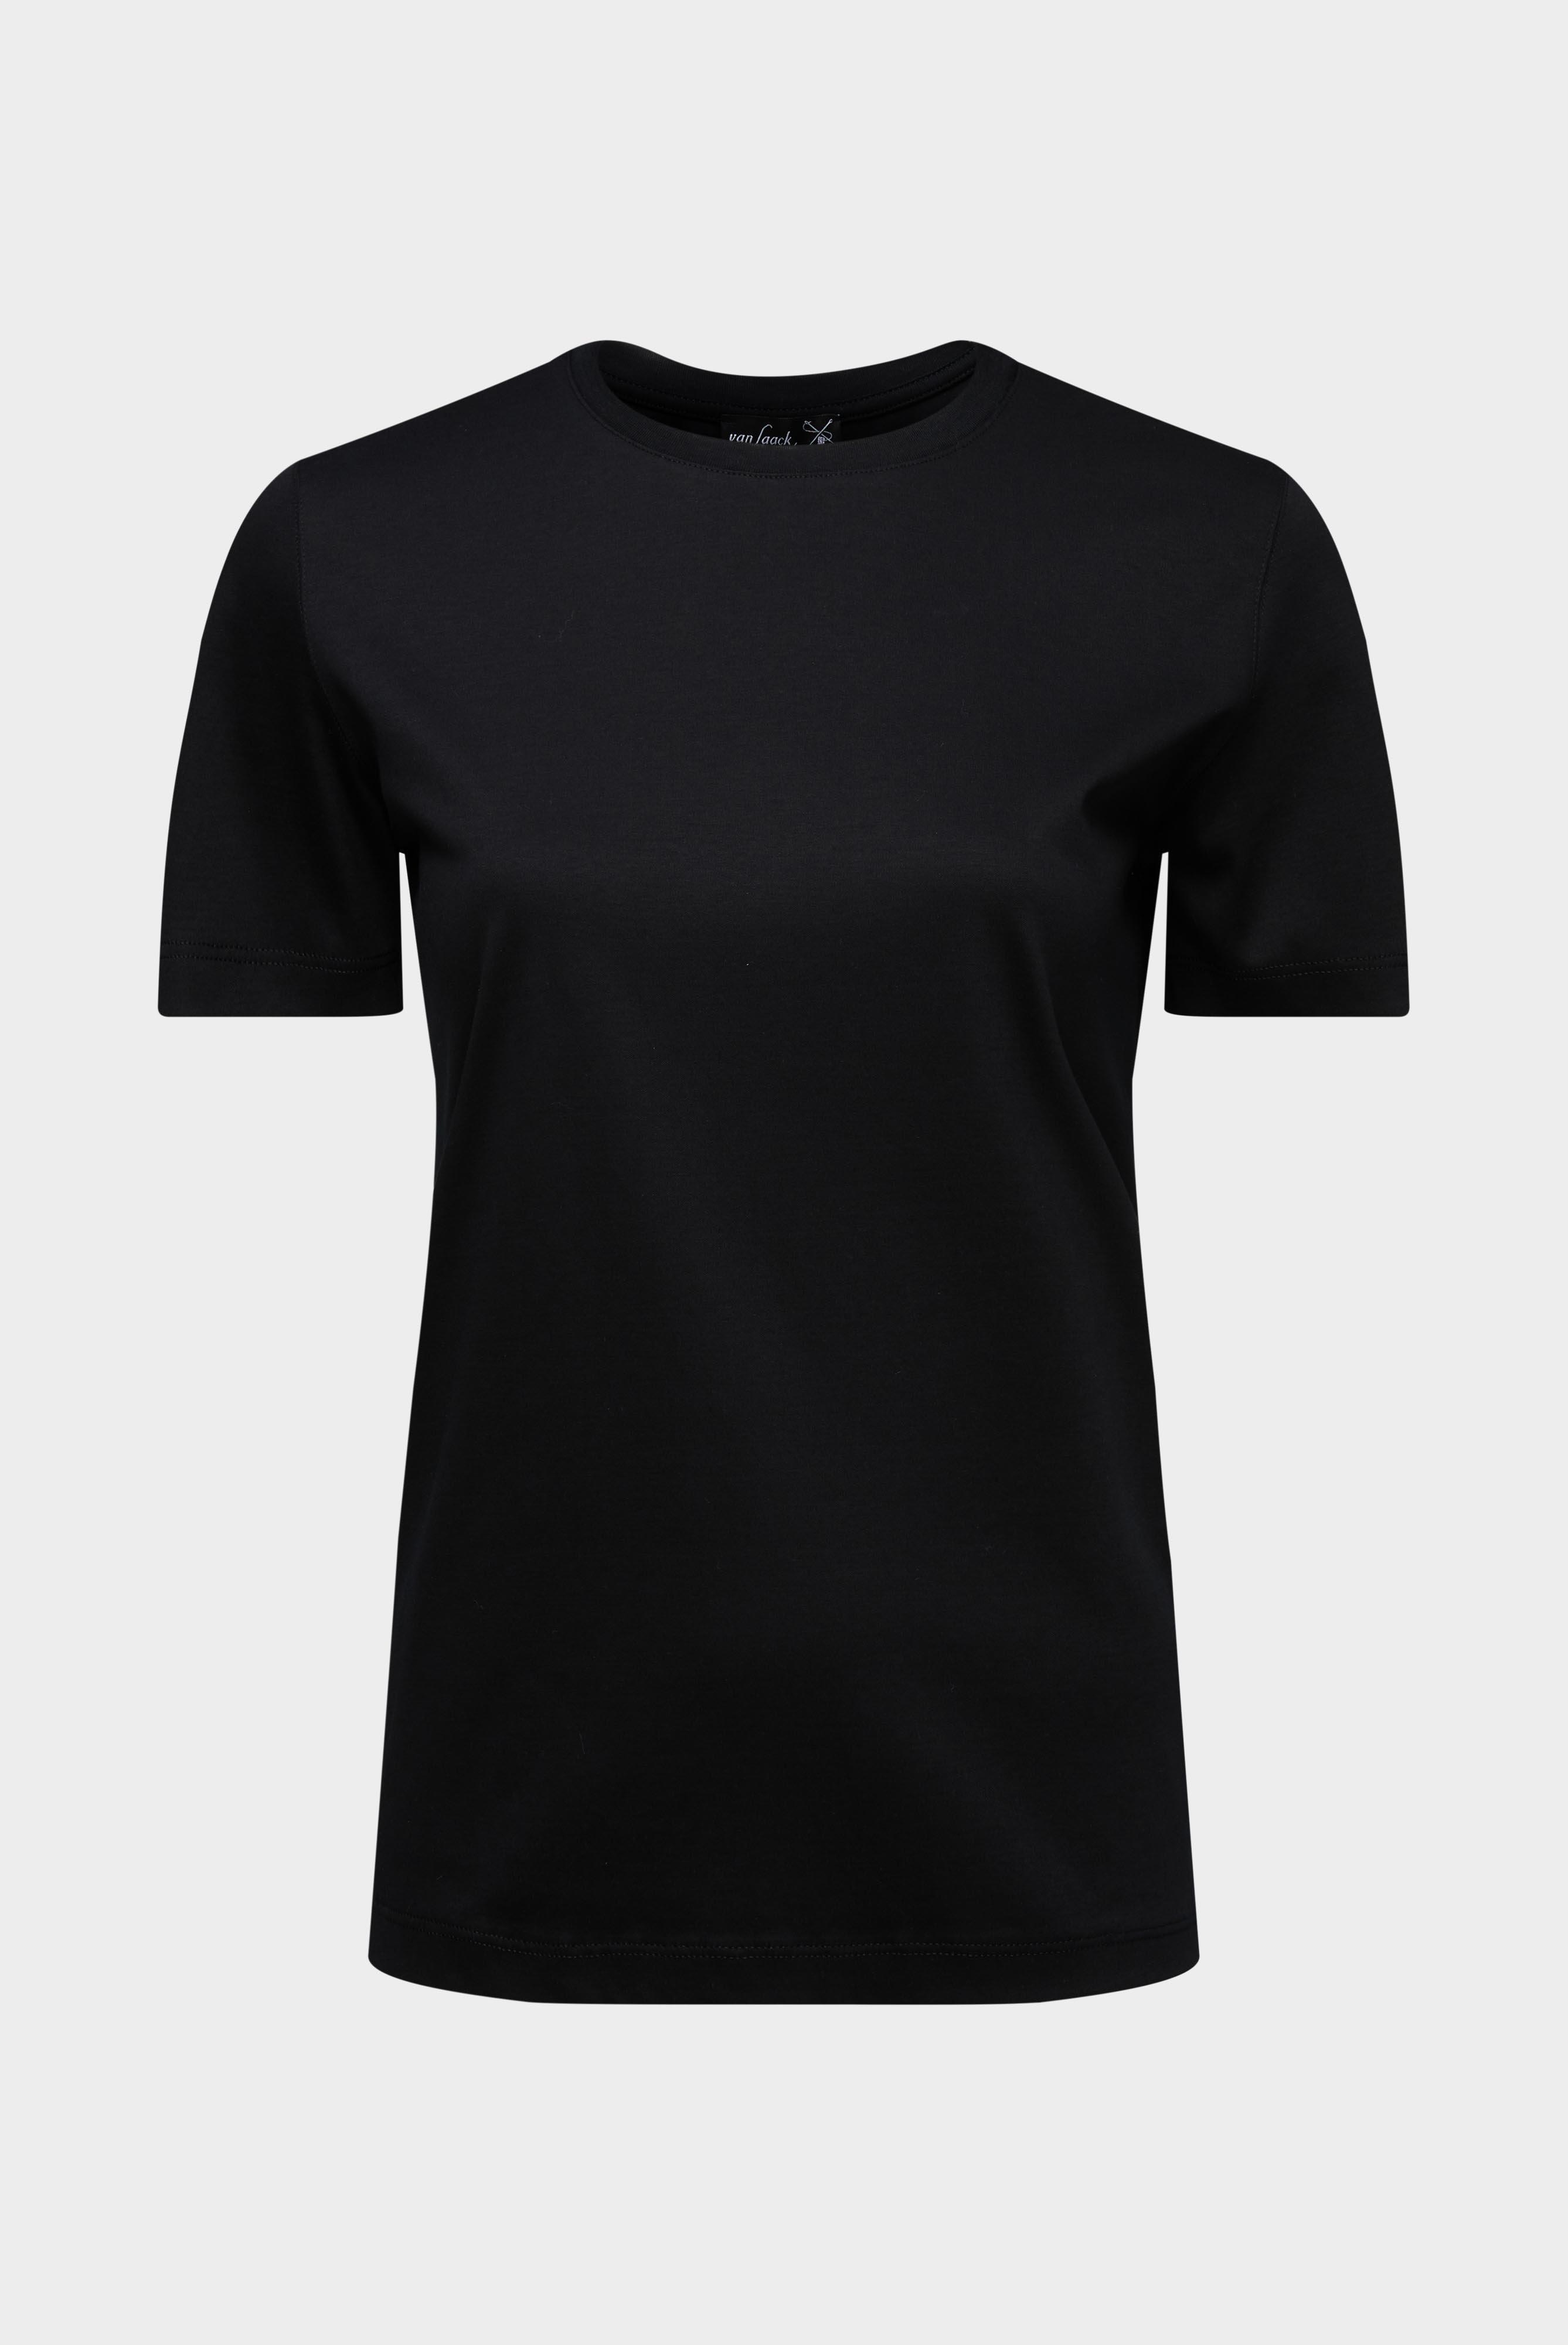 Tops & T-Shirts+Jersey T-Shirt+05.6384.18.180031.099.36